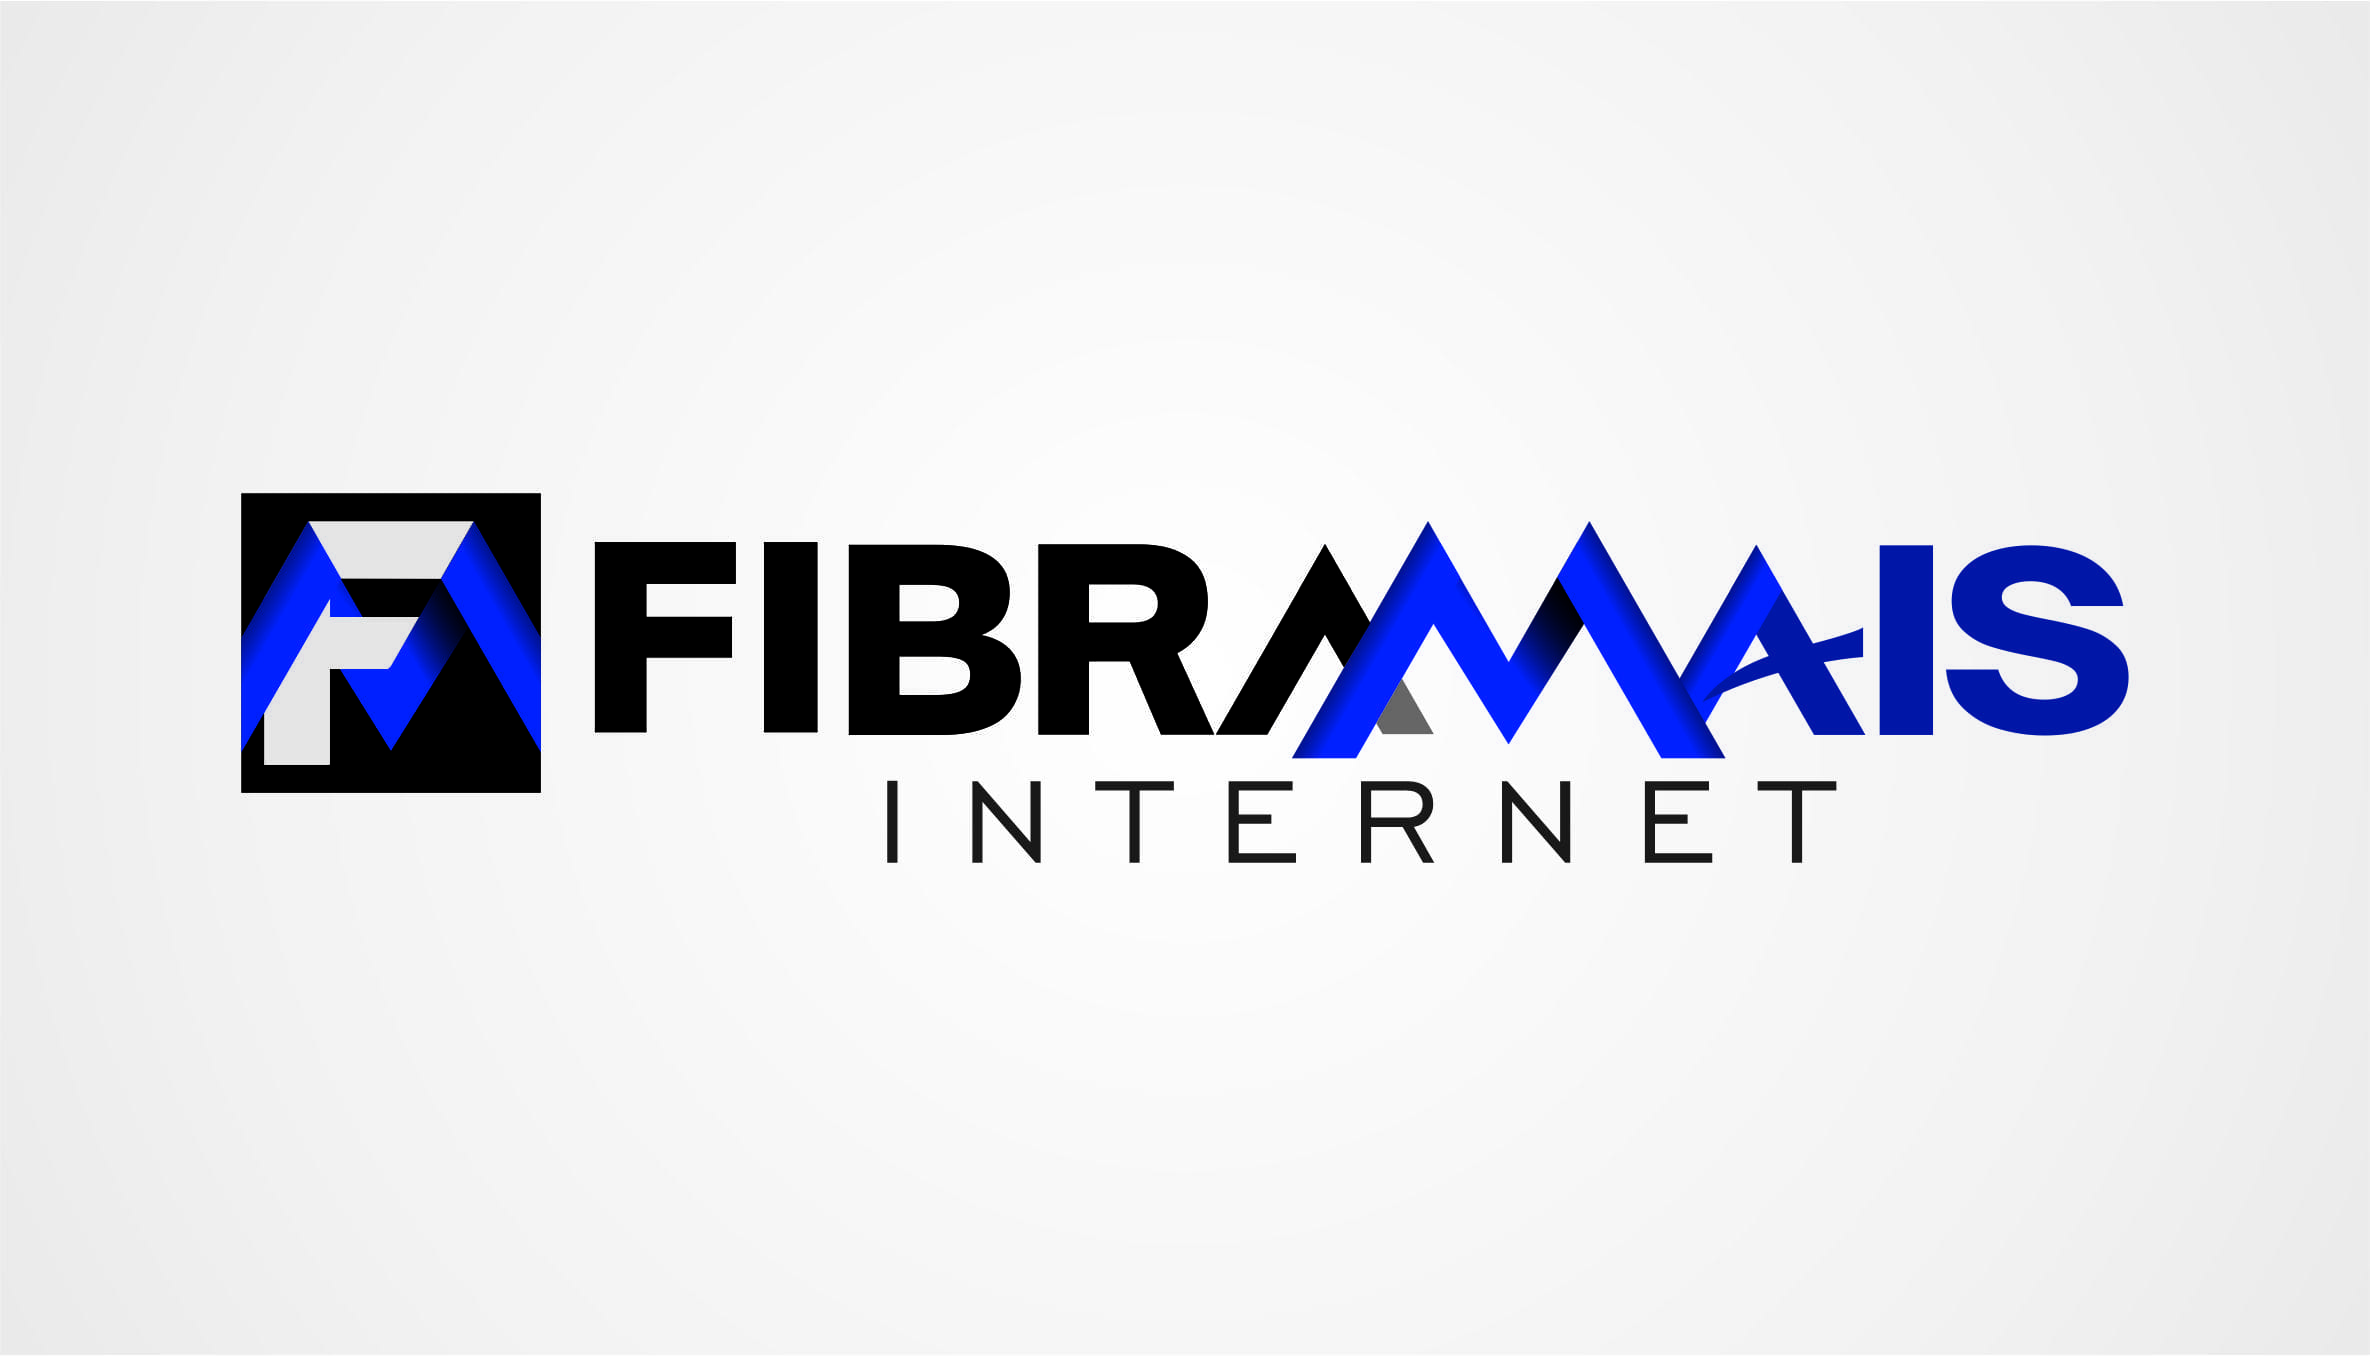 FibraMais Internet